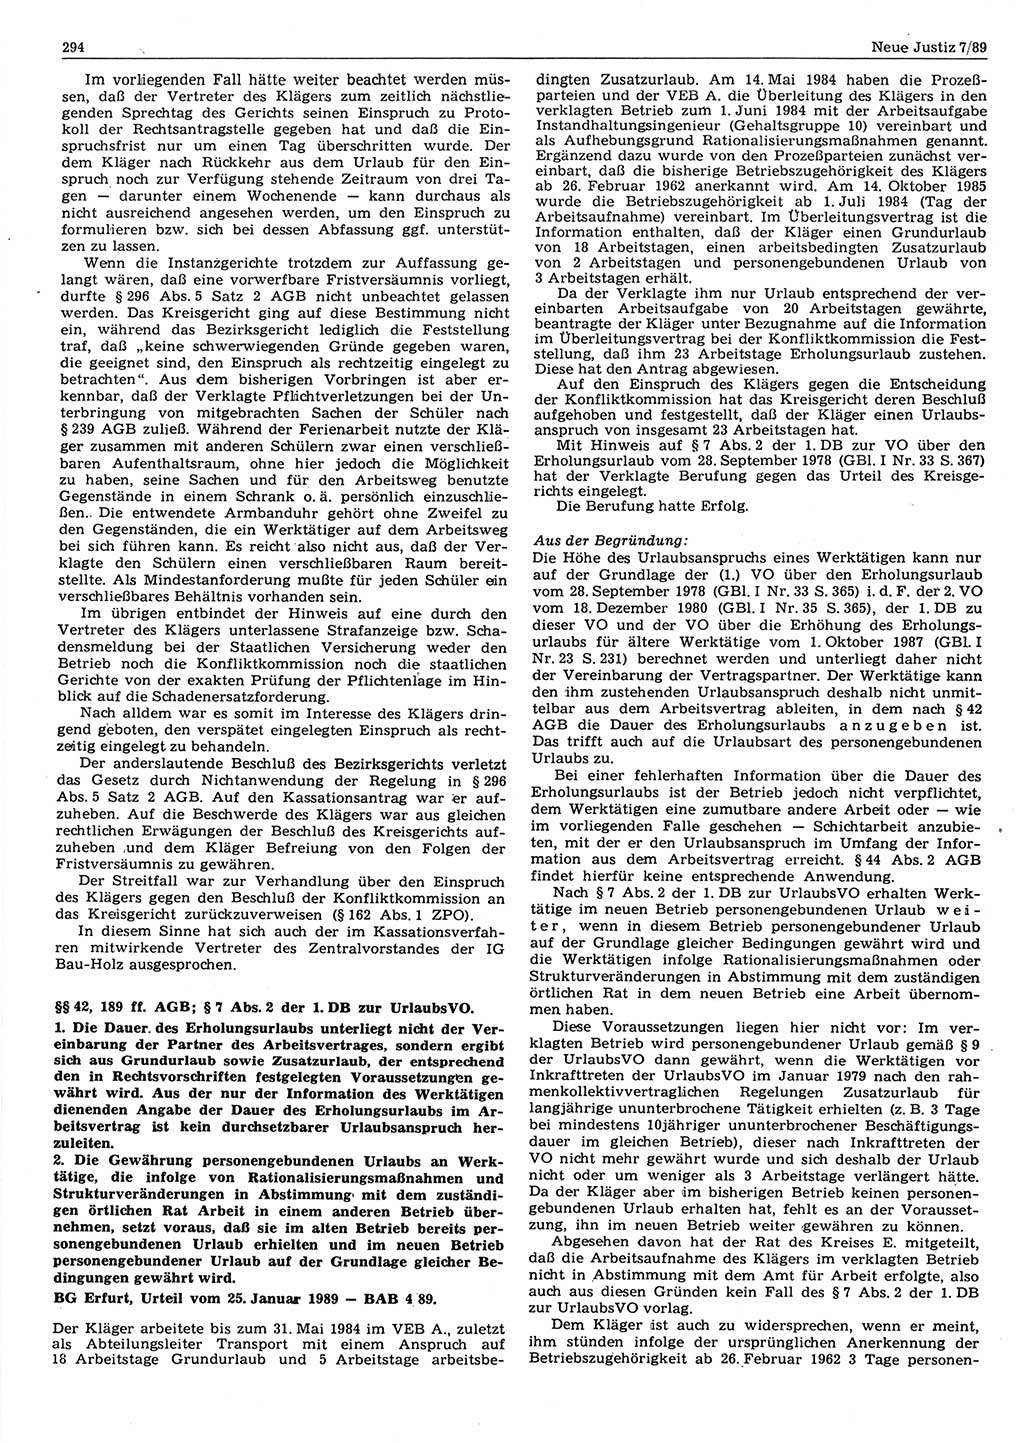 Neue Justiz (NJ), Zeitschrift für sozialistisches Recht und Gesetzlichkeit [Deutsche Demokratische Republik (DDR)], 43. Jahrgang 1989, Seite 294 (NJ DDR 1989, S. 294)